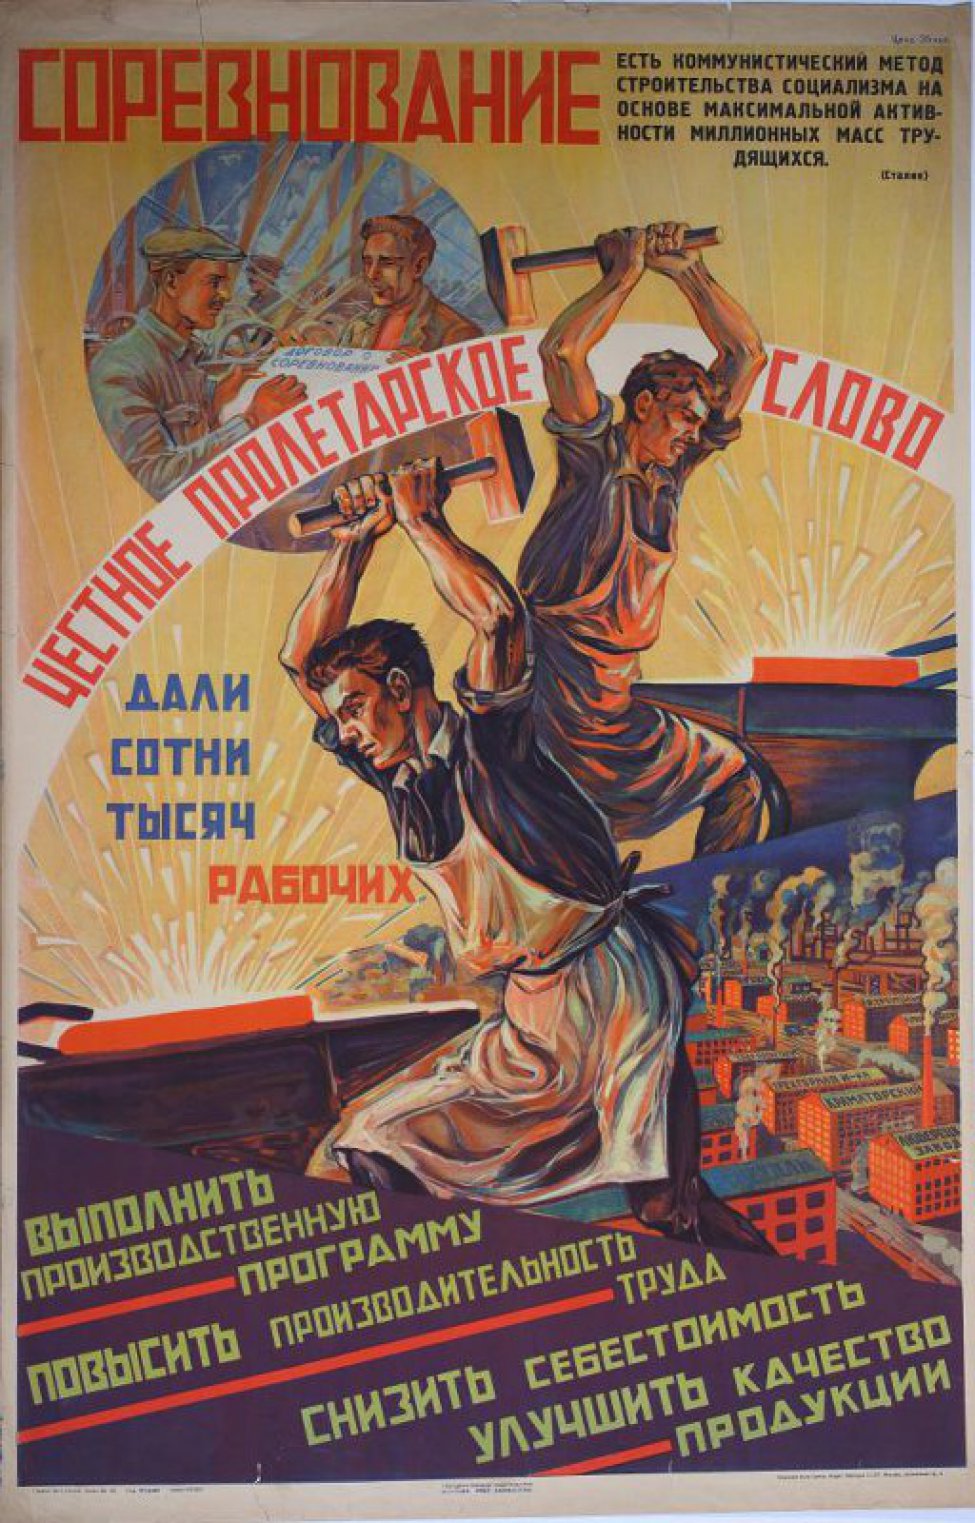 Строительство социалистического общества. Социализм плакаты. Строительство социализма плакат. Чешские социалистические плакаты. Стройки социализма.